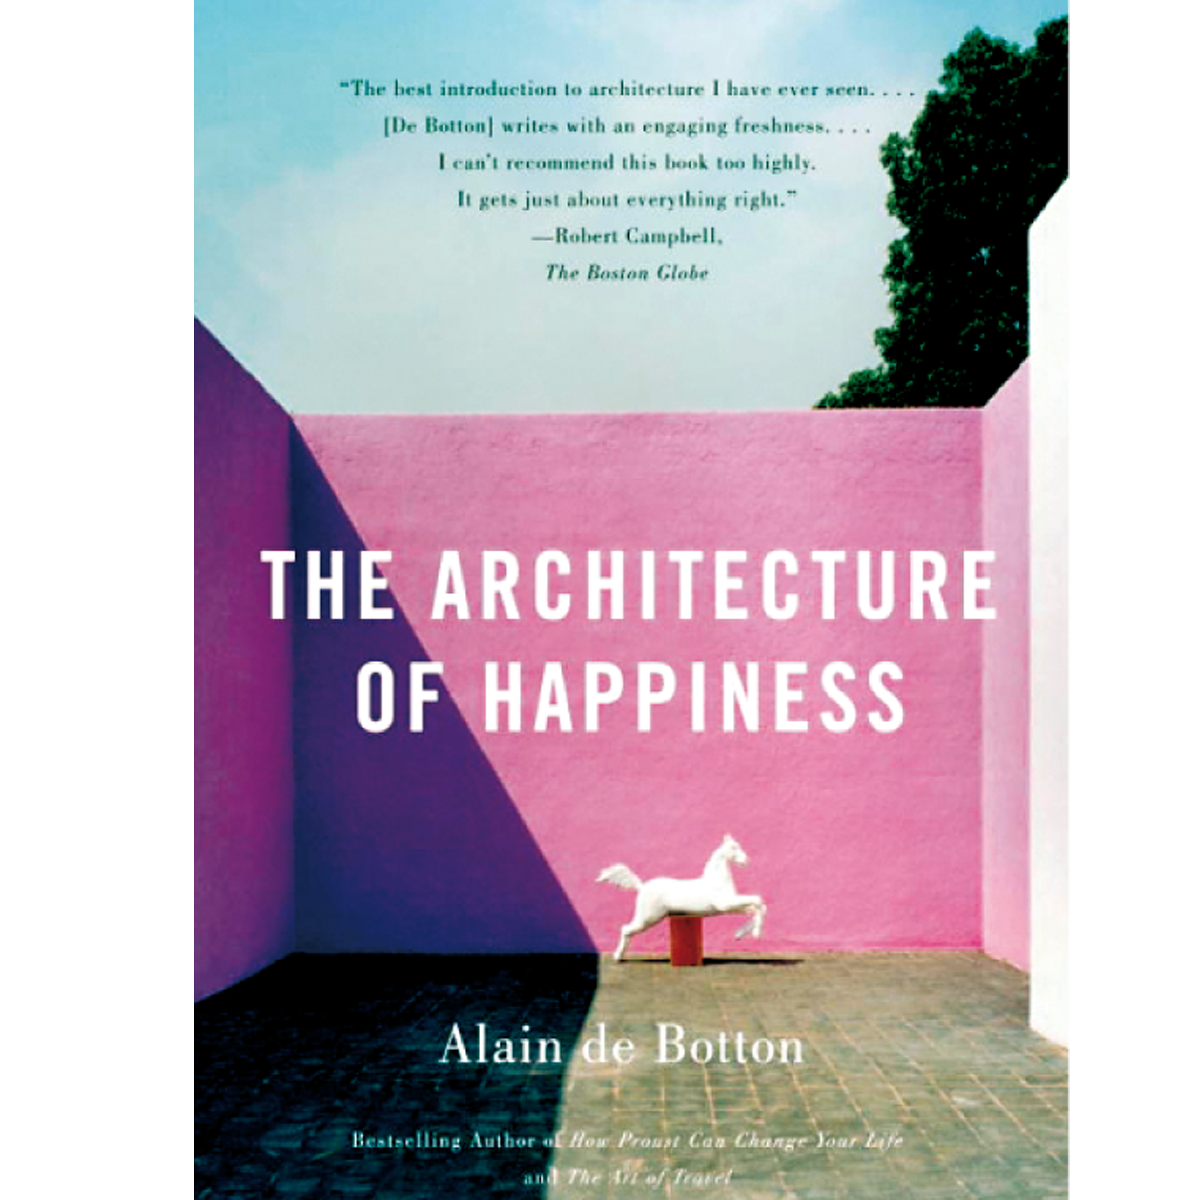 La arquitectura de la felicidad